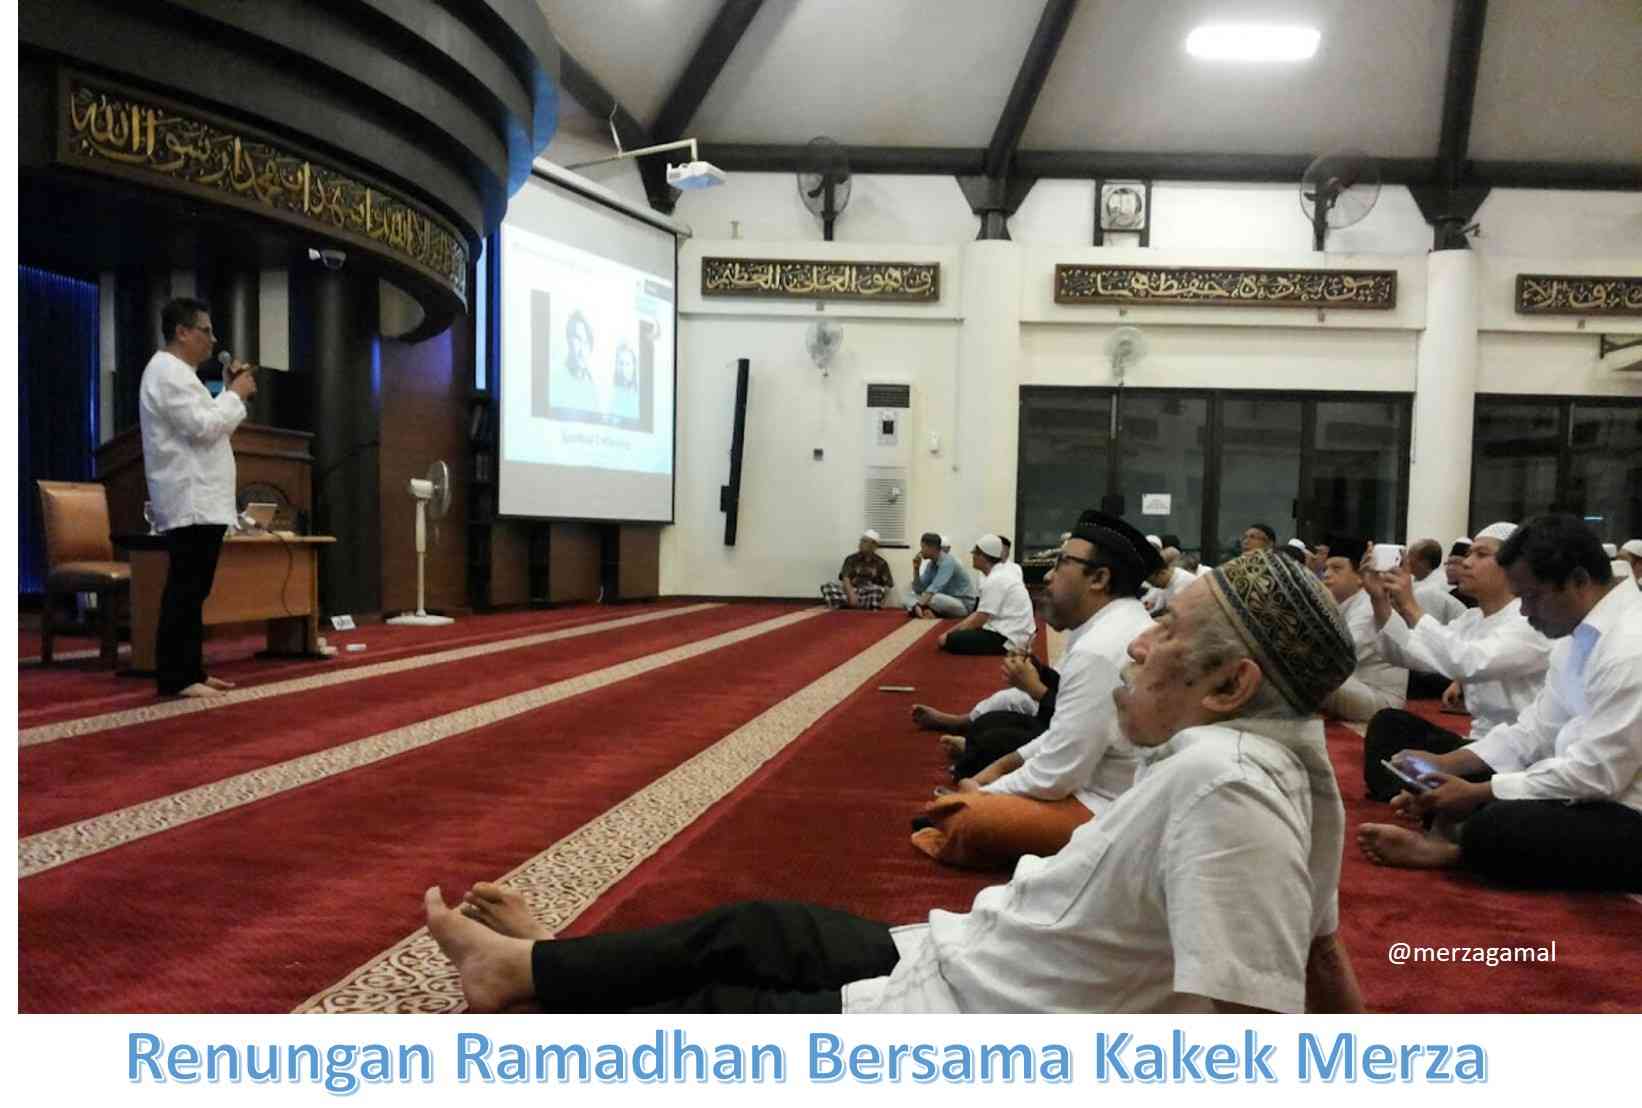 Renungan Ramadhan (08): Tantangan dan Rintangan untuk Menjadi Mukmin Sejati